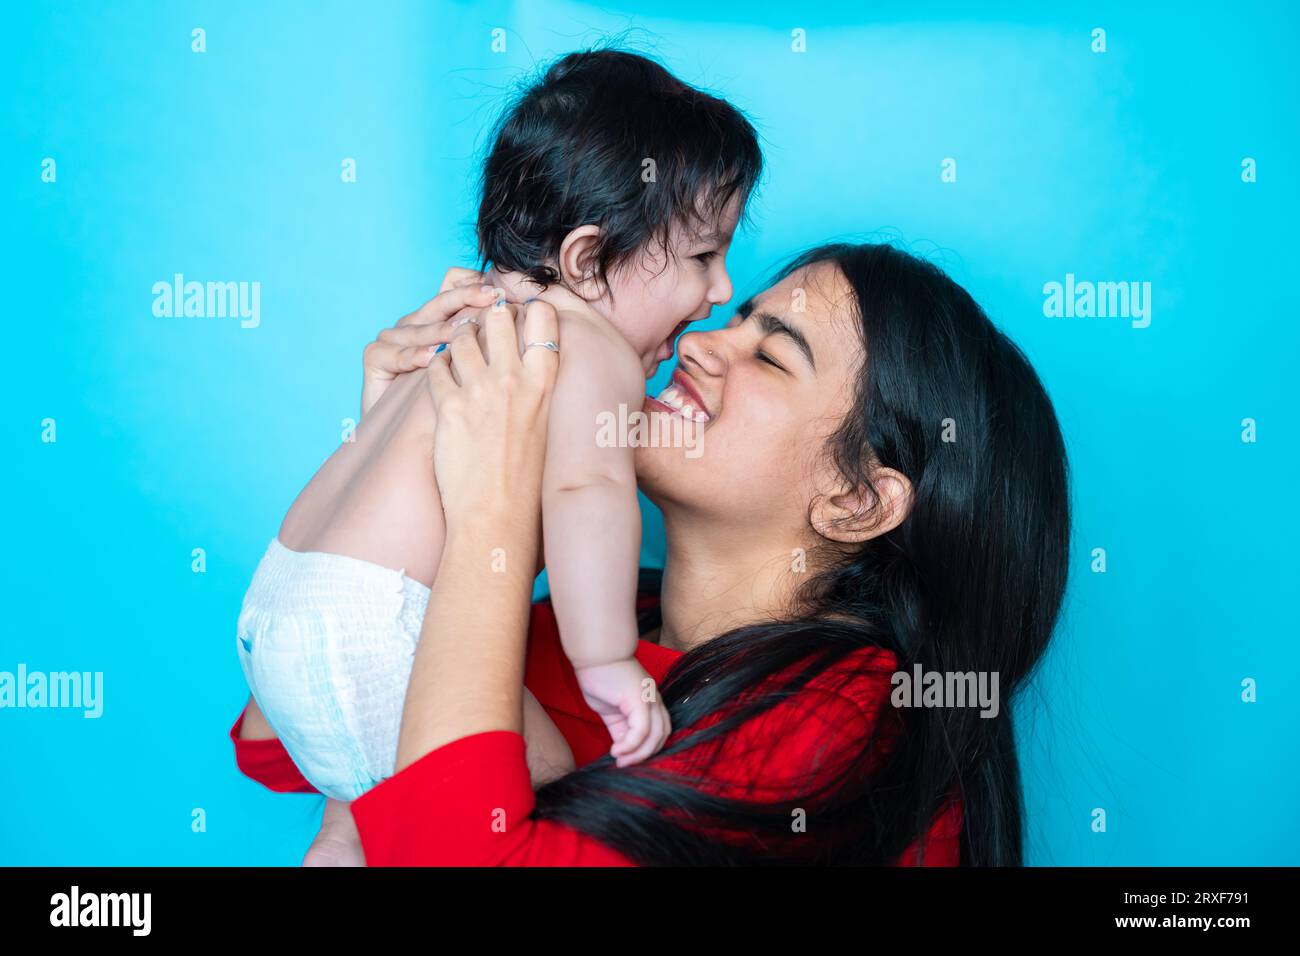 Indisches Teenager-Mädchen spielt sechs Monate süßes kleines Baby in Windel isoliert über blauem Hintergrund. Asiatisches Kleinkind und Schwester, glückliche Familie. Stockfoto